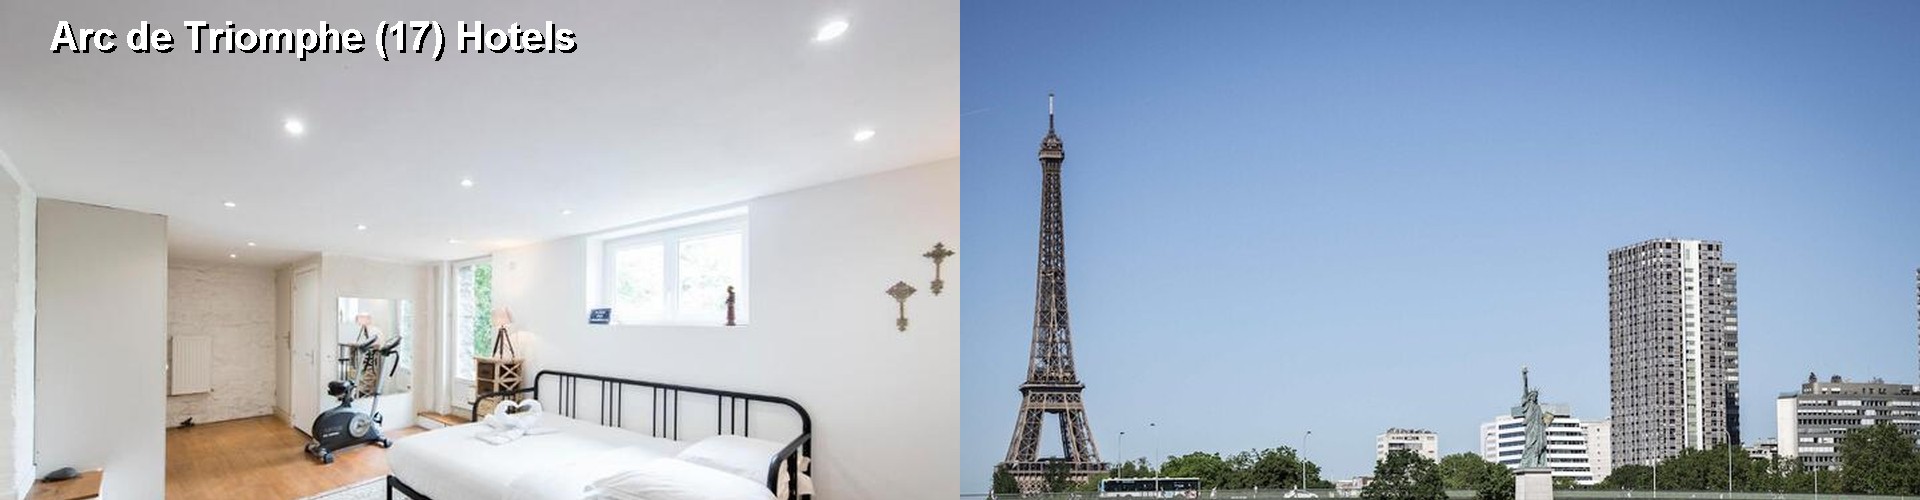 5 Best Hotels near Arc de Triomphe (17)